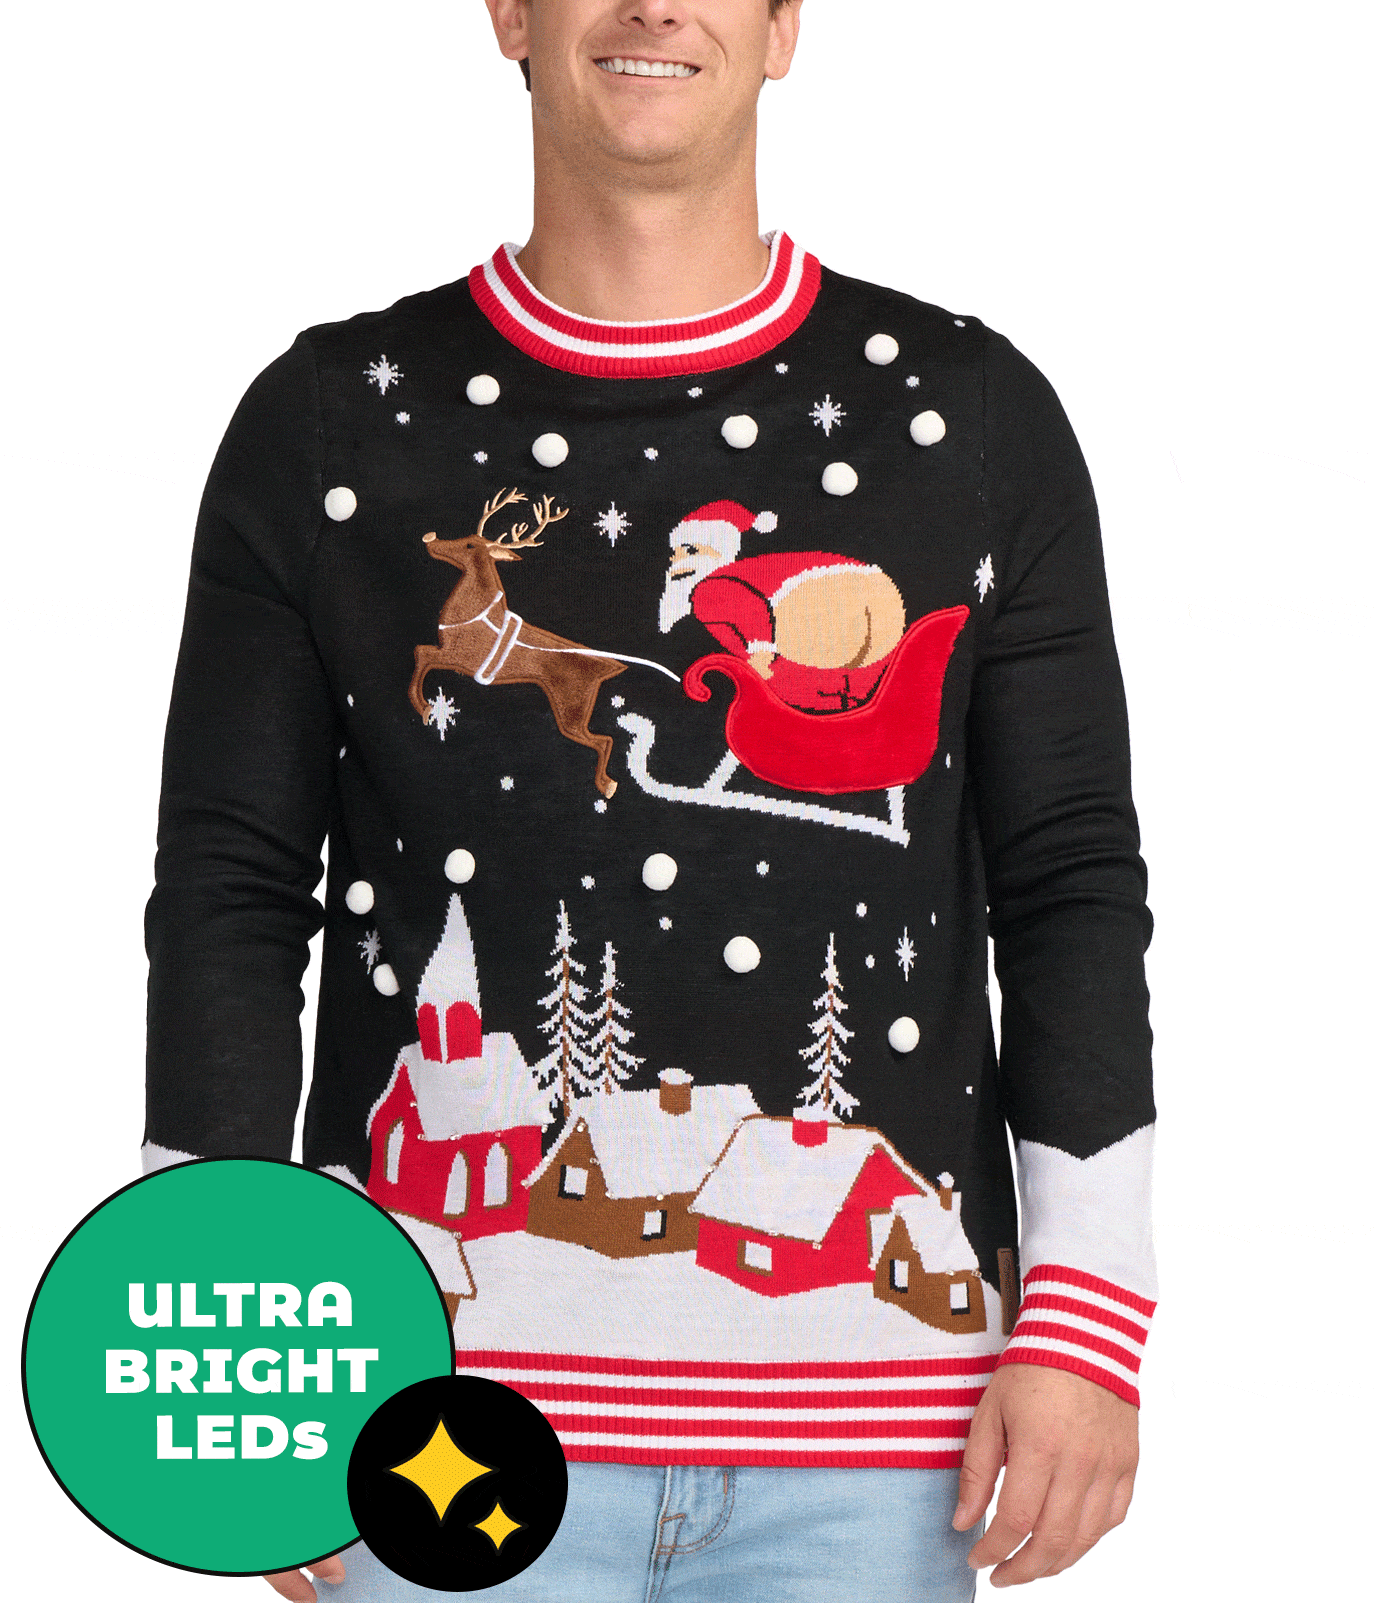 Full Moon Santa Light Up Ugly Christmas Sweater: Men's Christmas ...